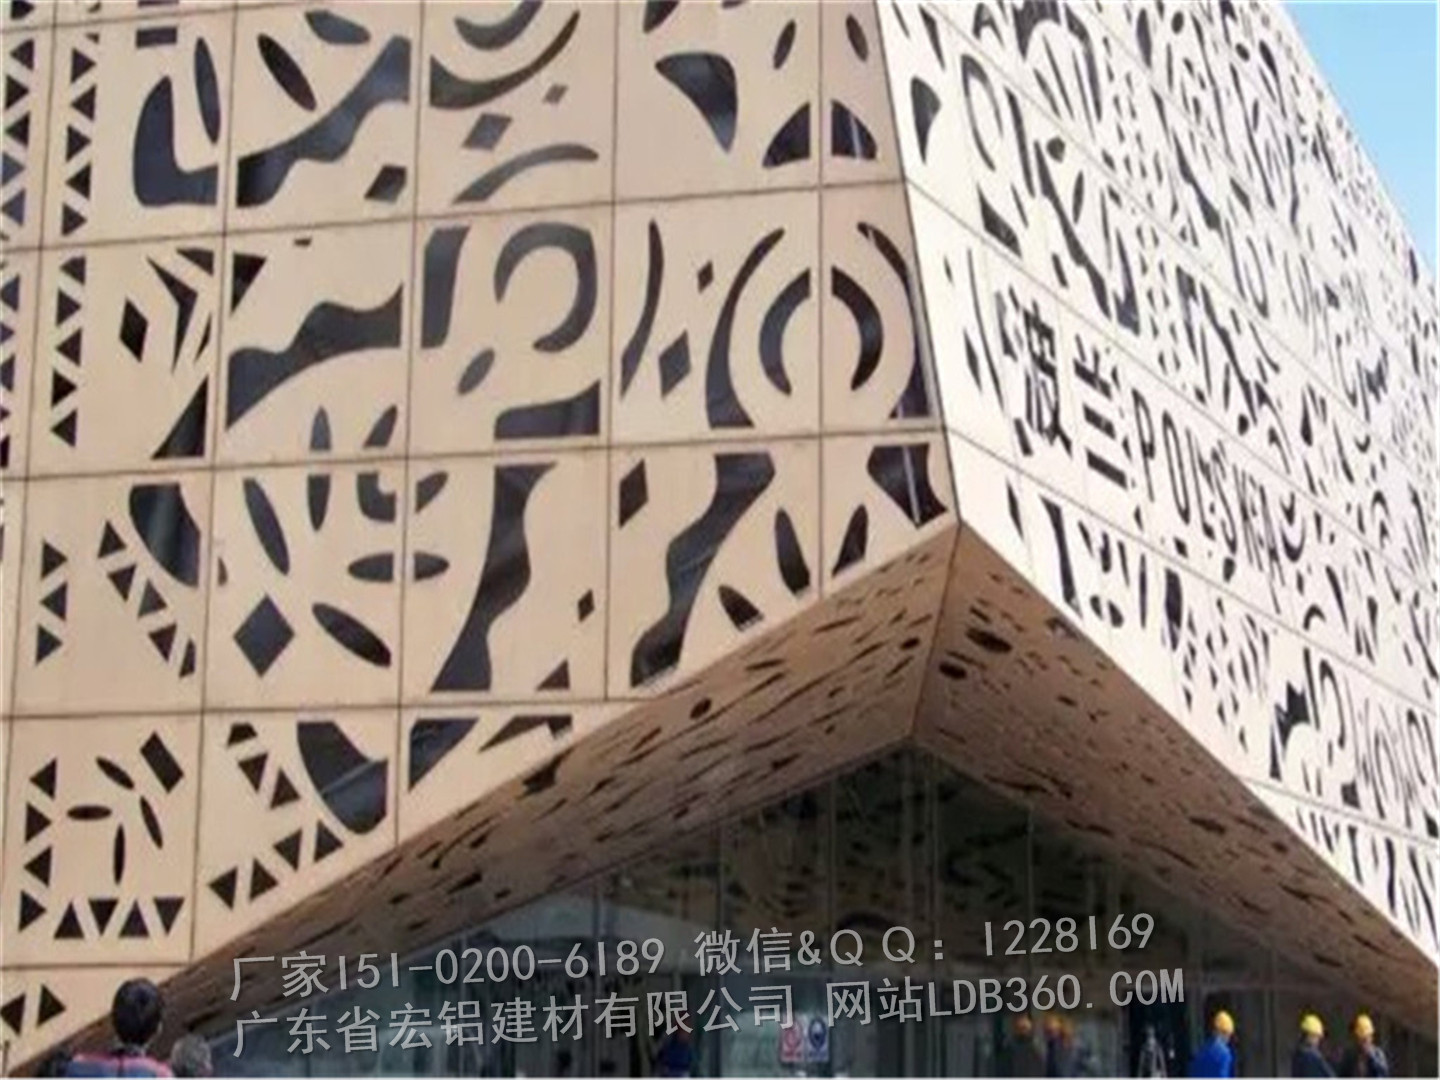 广州市环保铝幕墙厂家供应用于外墙装饰的环保铝幕墙，铝合金幕墙板，铝质幕墙板装饰材料